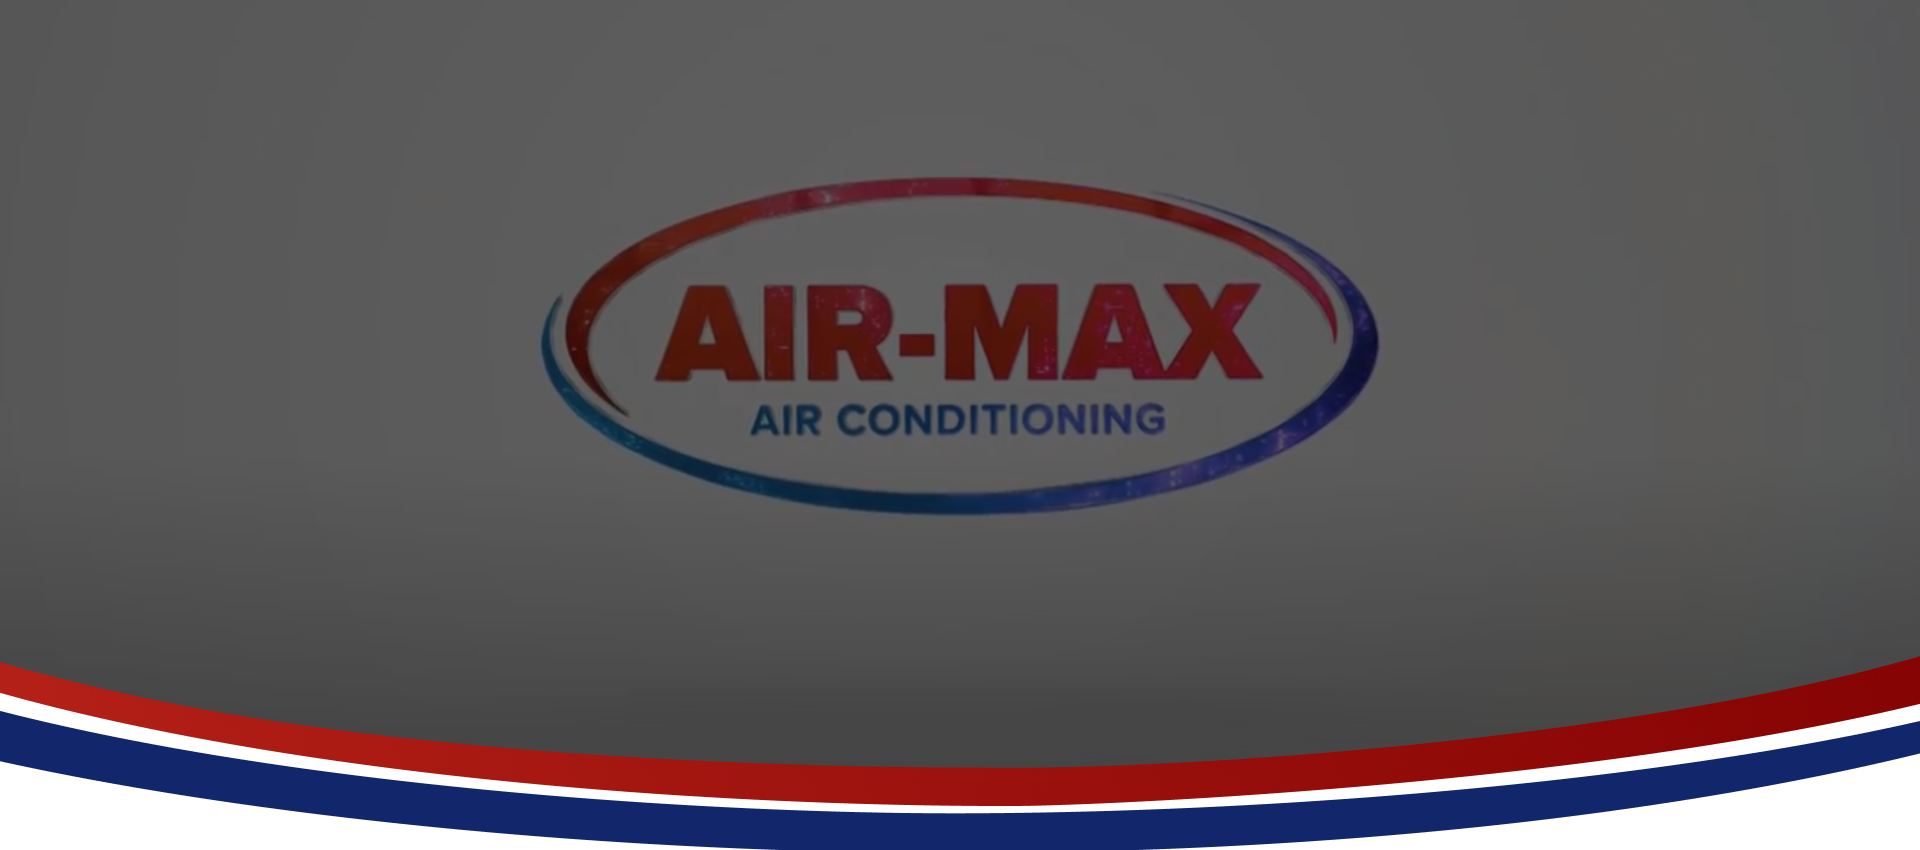 (c) Airmaxairconditioning.com.au